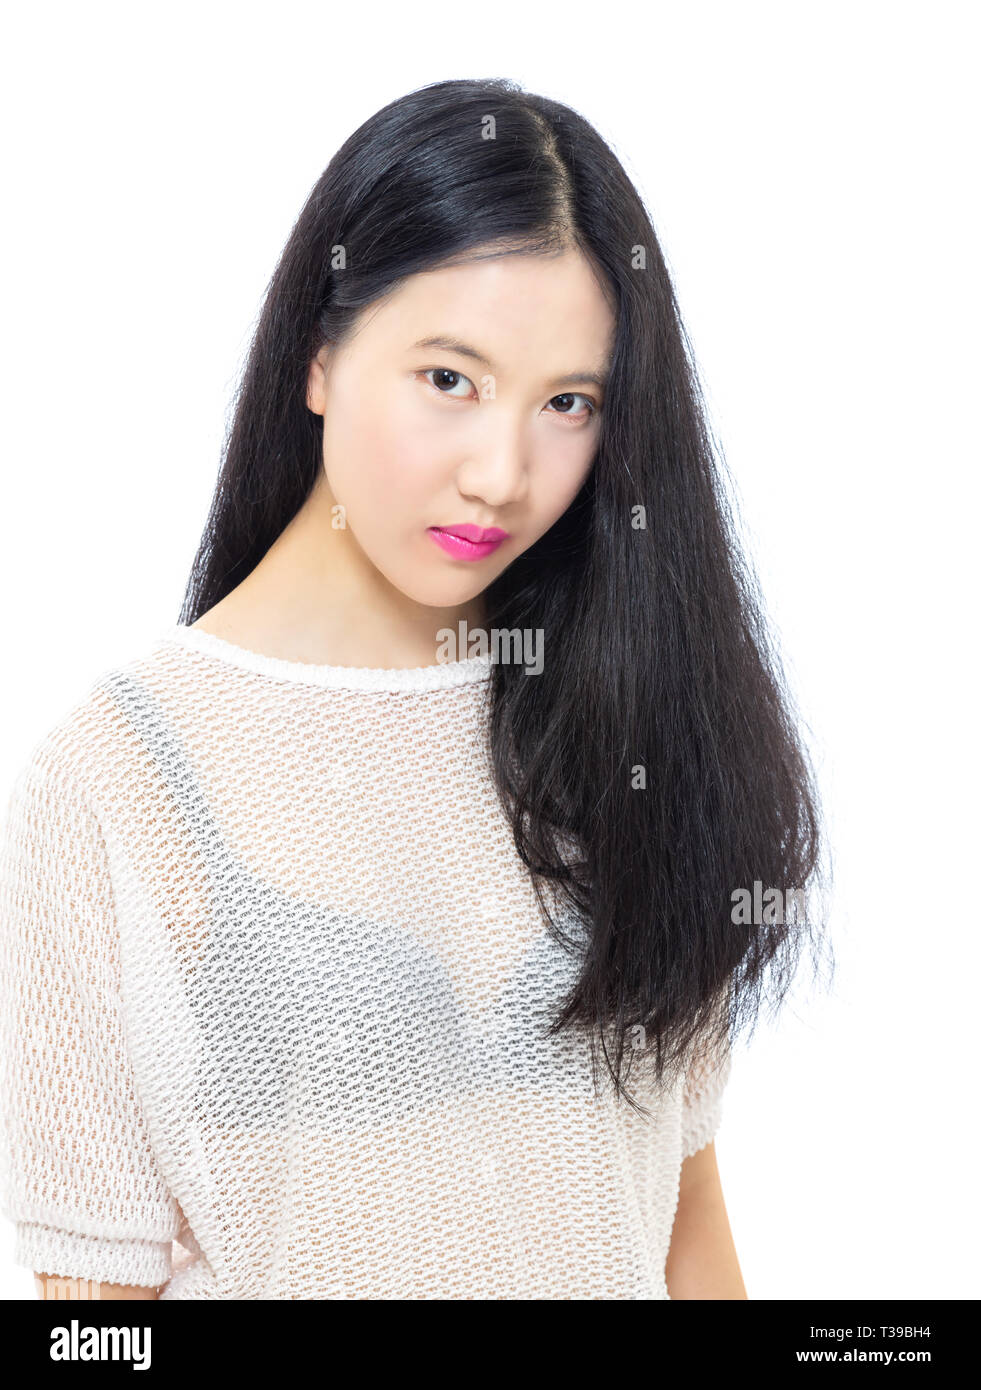 Teenage Asian high school girl, bellezza ritratto, skincare concept Foto Stock